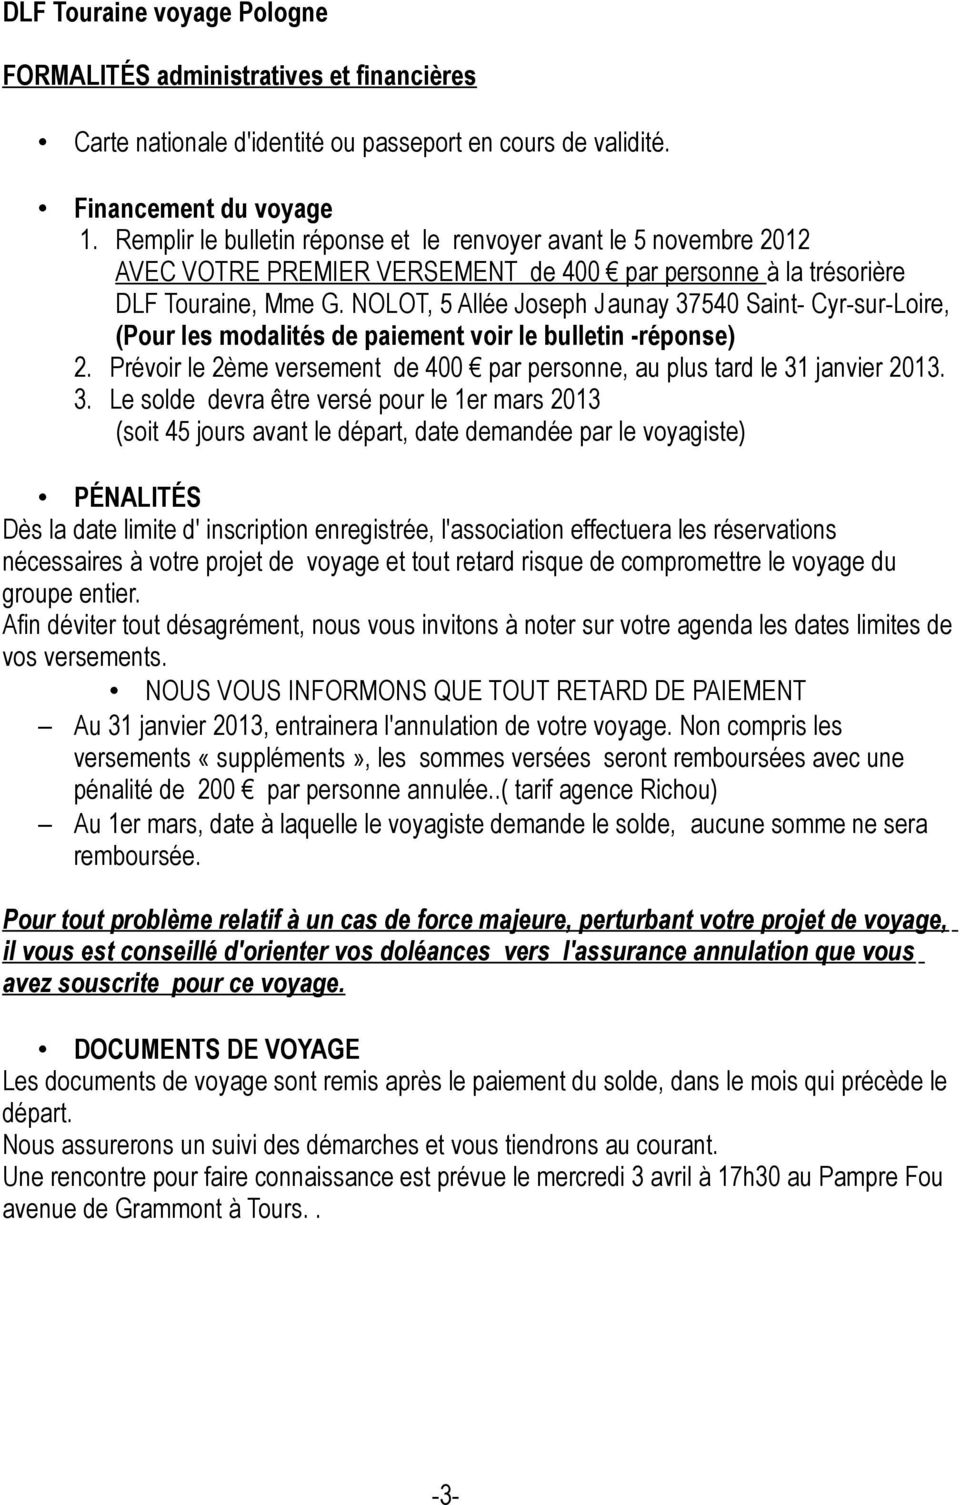 NOLOT, 5 Allée Joseph Jaunay 37540 Saint- Cyr-sur-Loire, (Pour les modalités de paiement voir le bulletin -réponse) 2. Prévoir le 2ème versement de 400 par personne, au plus tard le 31 janvier 2013.